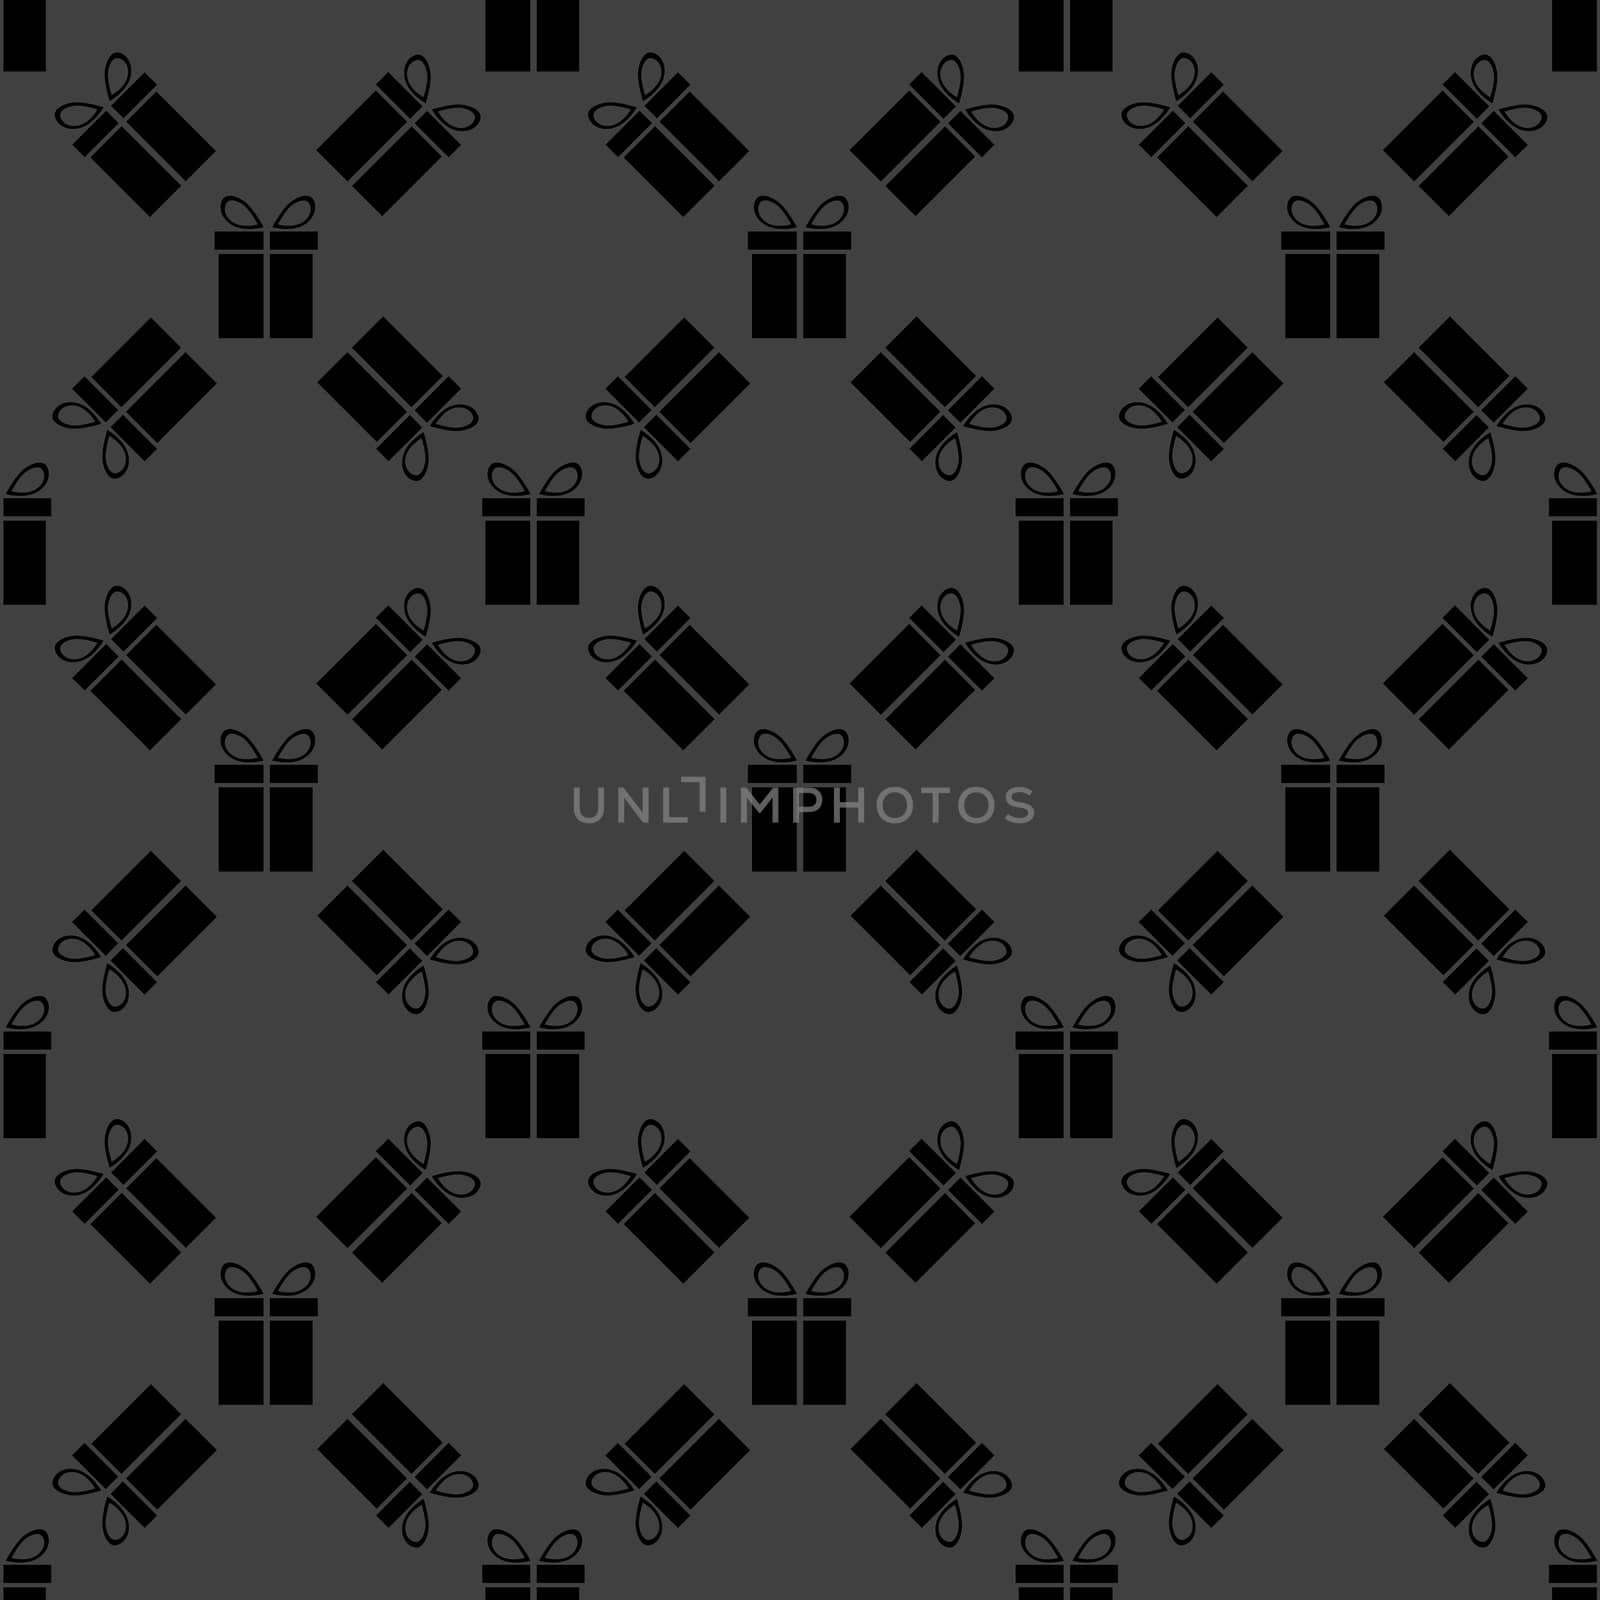 gift web icon. flat design. Seamless gray pattern. by serhii_lohvyniuk